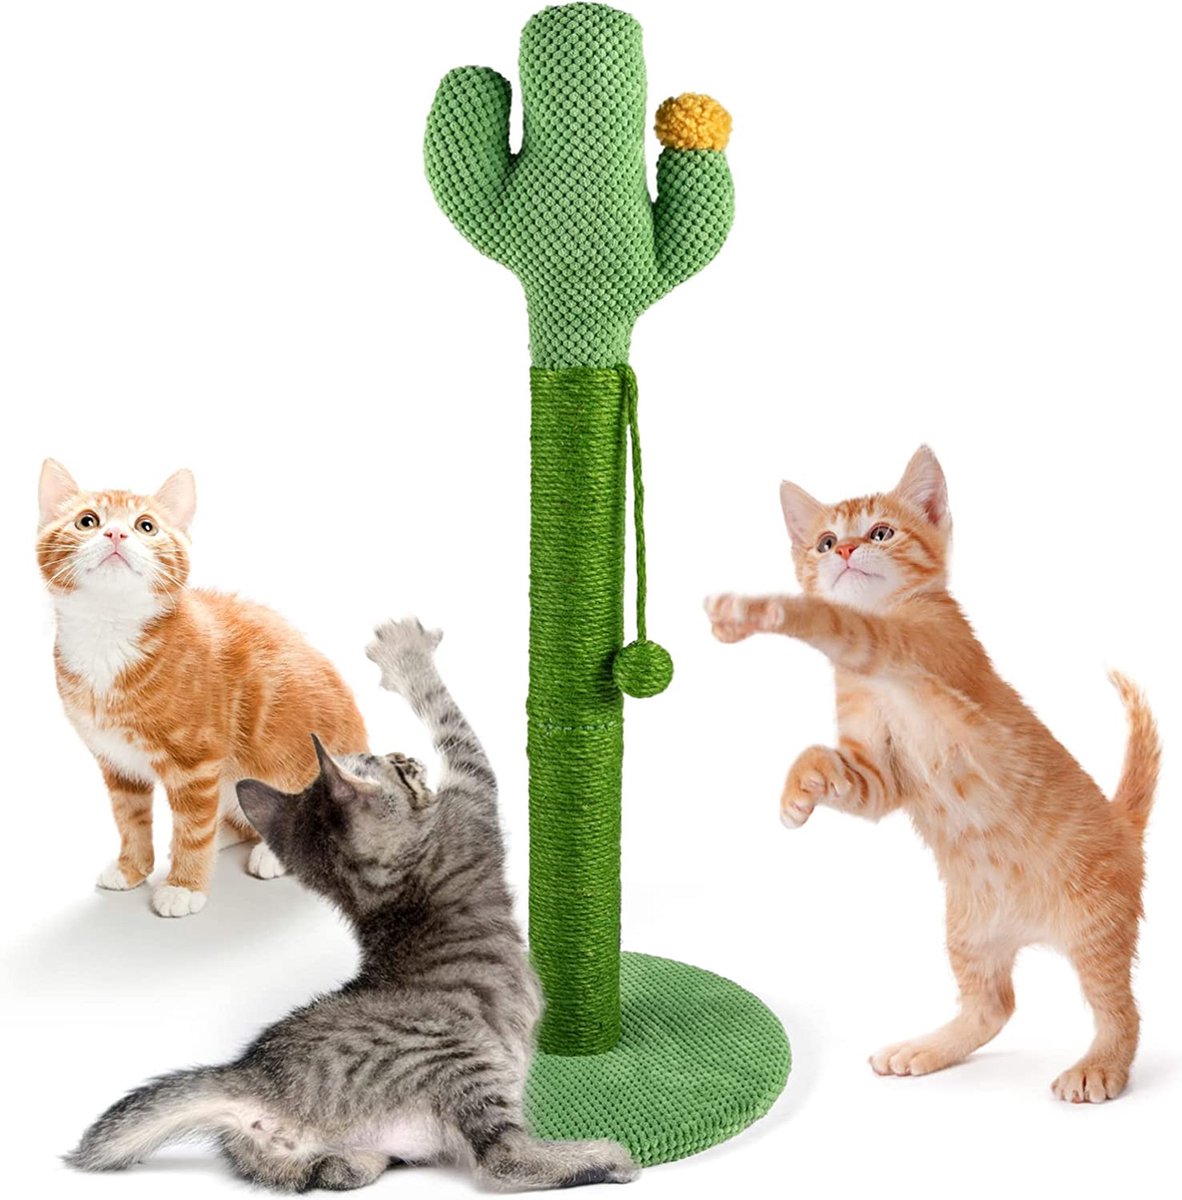 Mora Pets Krabpaal voor katten krabstam cactus krabpaal kattenkrabpaal voor kleine en grote katten krabpaal sisal groen 83 x 39 cm